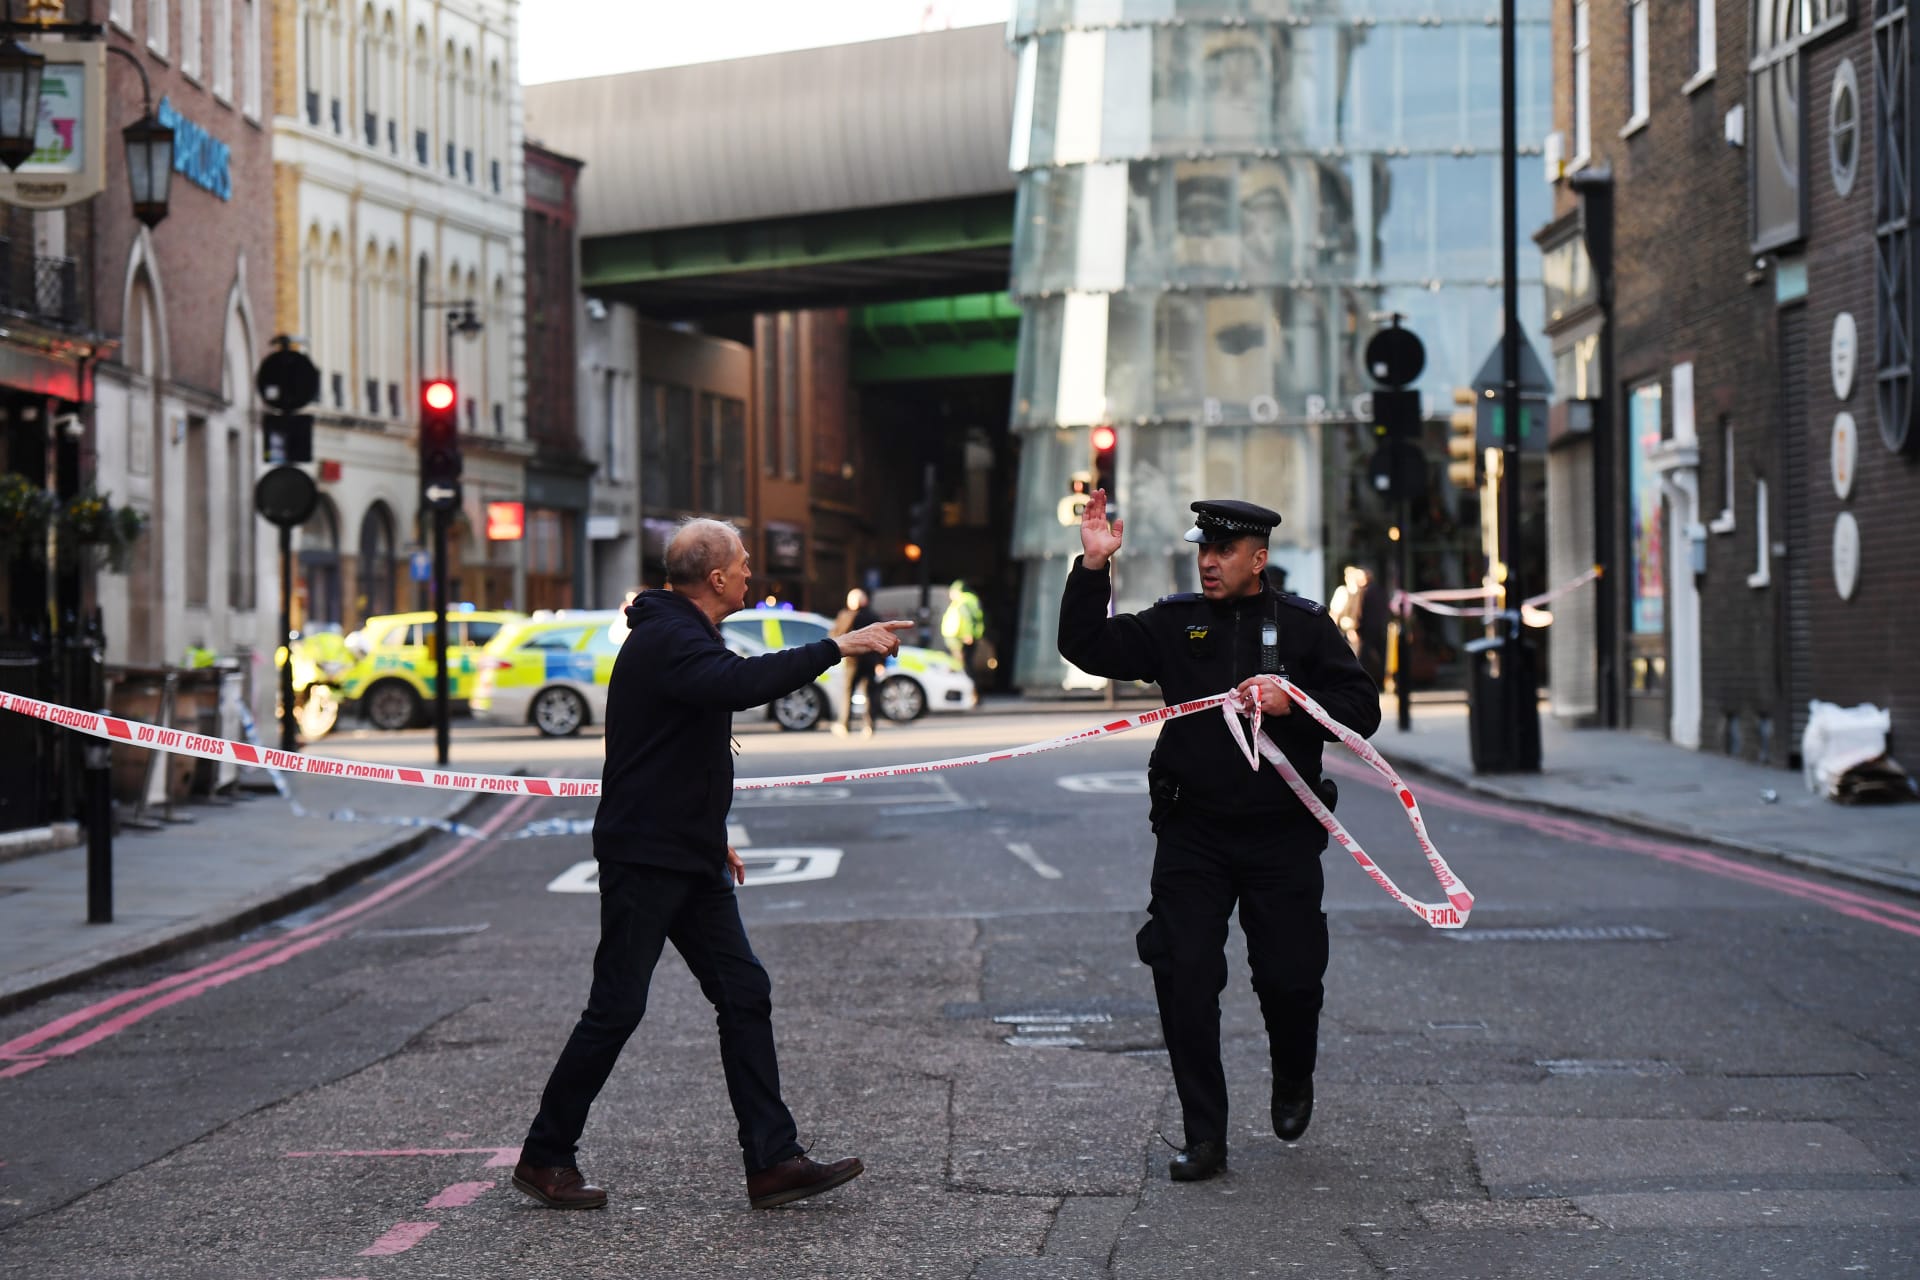 الشرطة البريطانية: إخلاء محطة "لندن بريدج" بعد بلاغات عن طرد مشبوه